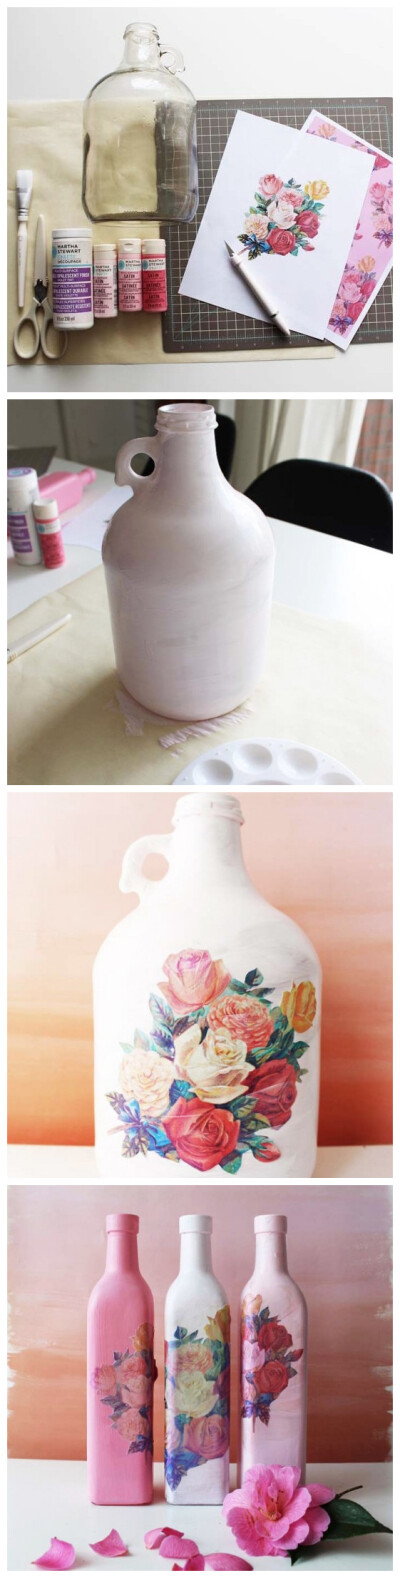 手工花瓶的新办法
DIY 家具 家居 手工制作 创意家具 生活 装修设计 花瓶 花盆 教程 摆设